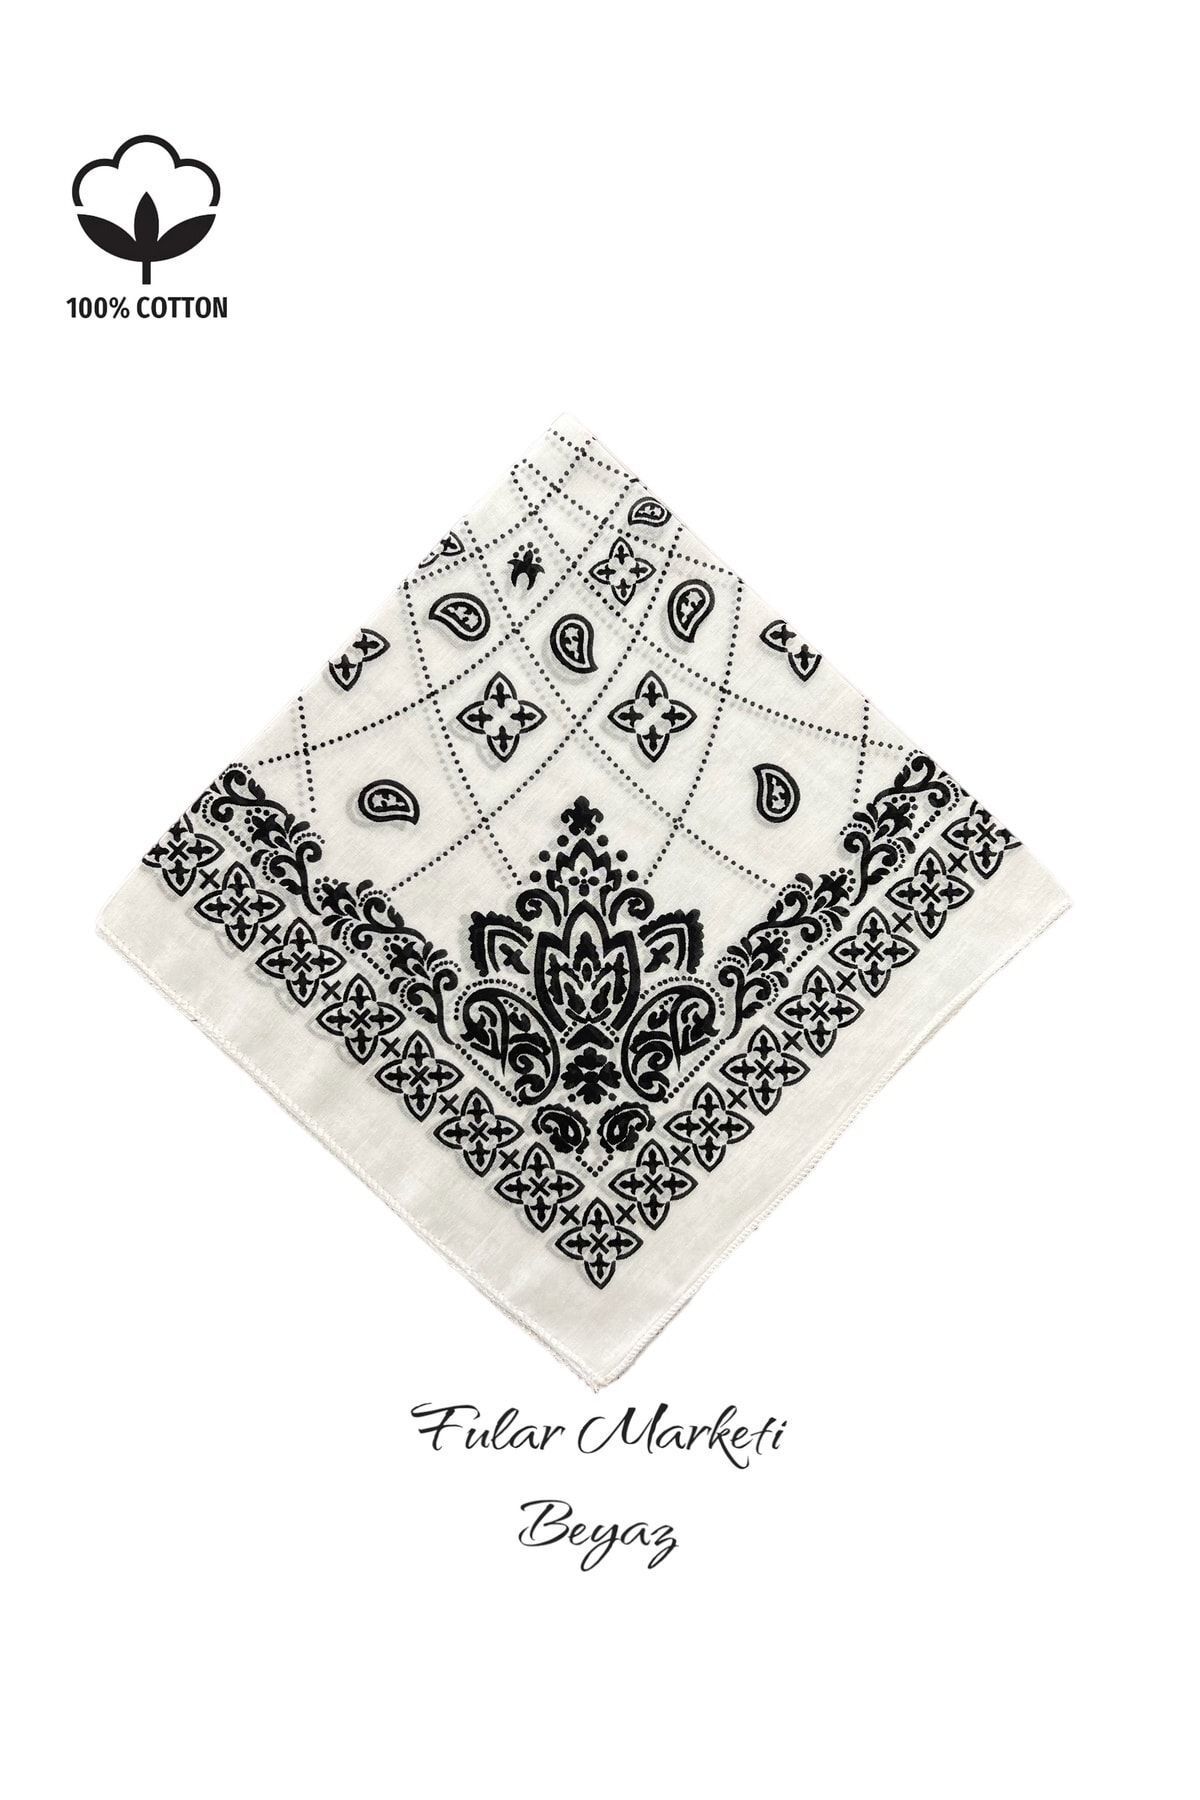 Fular Marketi %100 Pamuklu Elegance Desen Beyaz Sepete 5 Adet Ekle 4 Adet Öde Kampanyalı 1 Adet Fiyatıdır